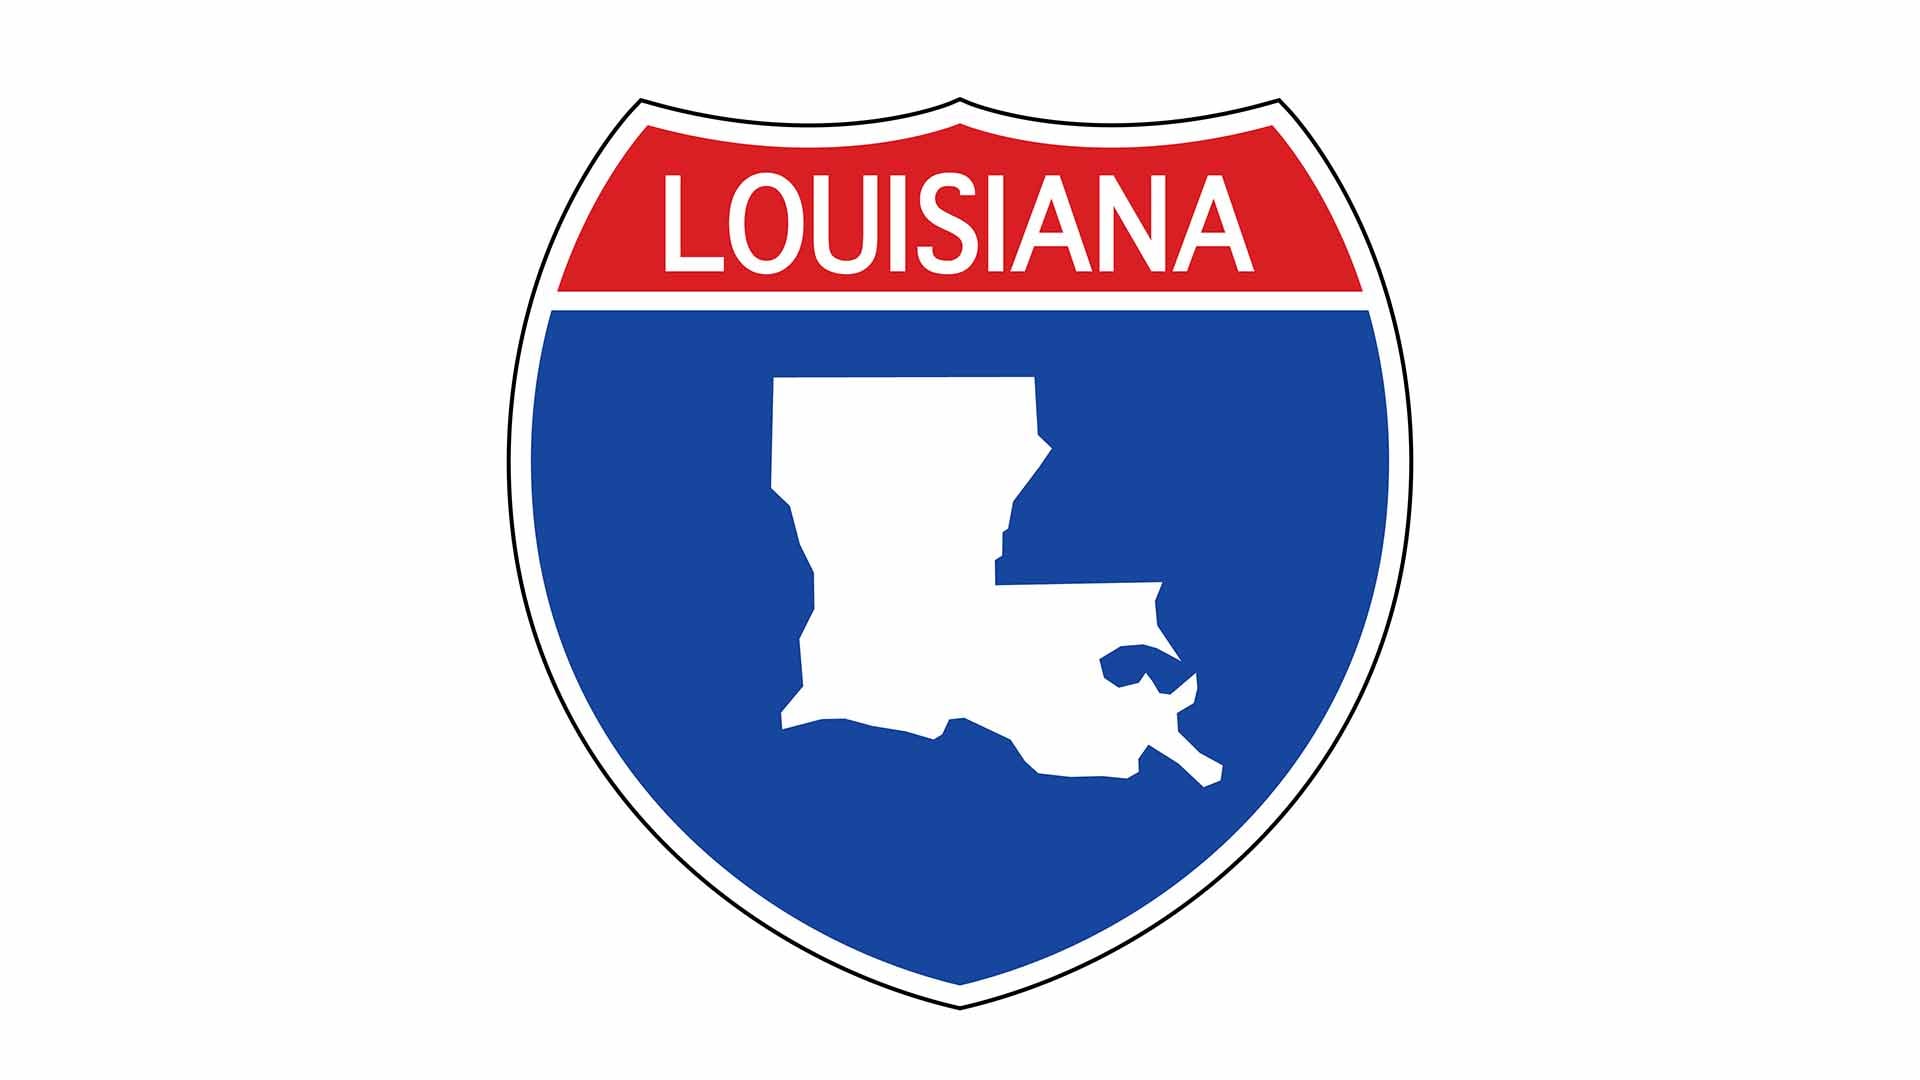 Louisiana state roadside sign